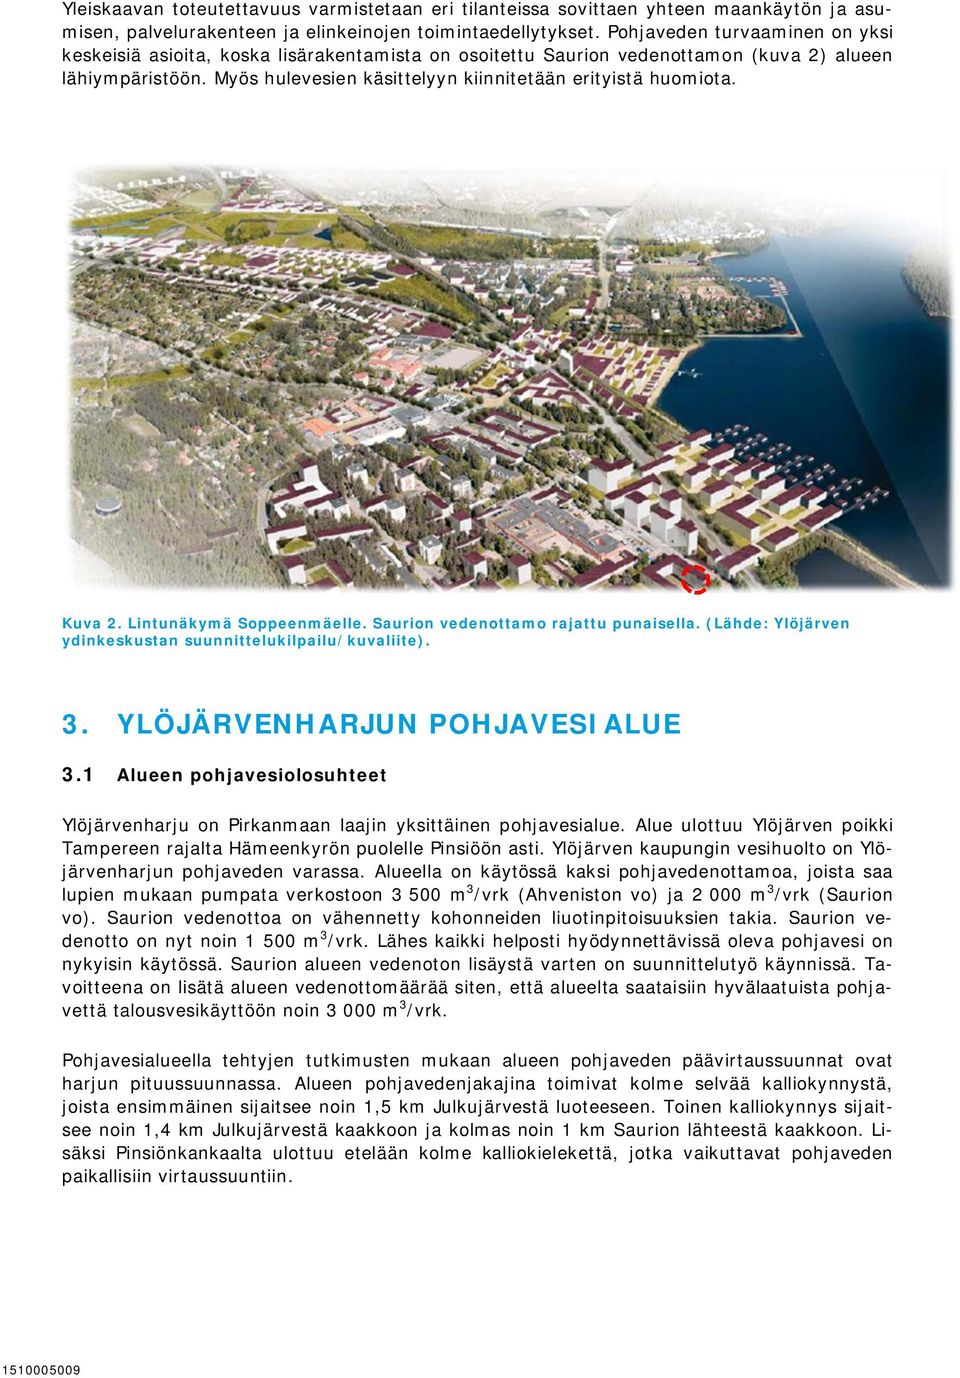 Kuva 2. Lintunäkymä Soppeenmäelle. Saurion vedenottamo rajattu punaisella. (Lähde: Ylöjärven ydinkeskustan suunnittelukilpailu/kuvaliite). 3. YLÖJÄRVENHARJUN POHJAVESIALUE 3.